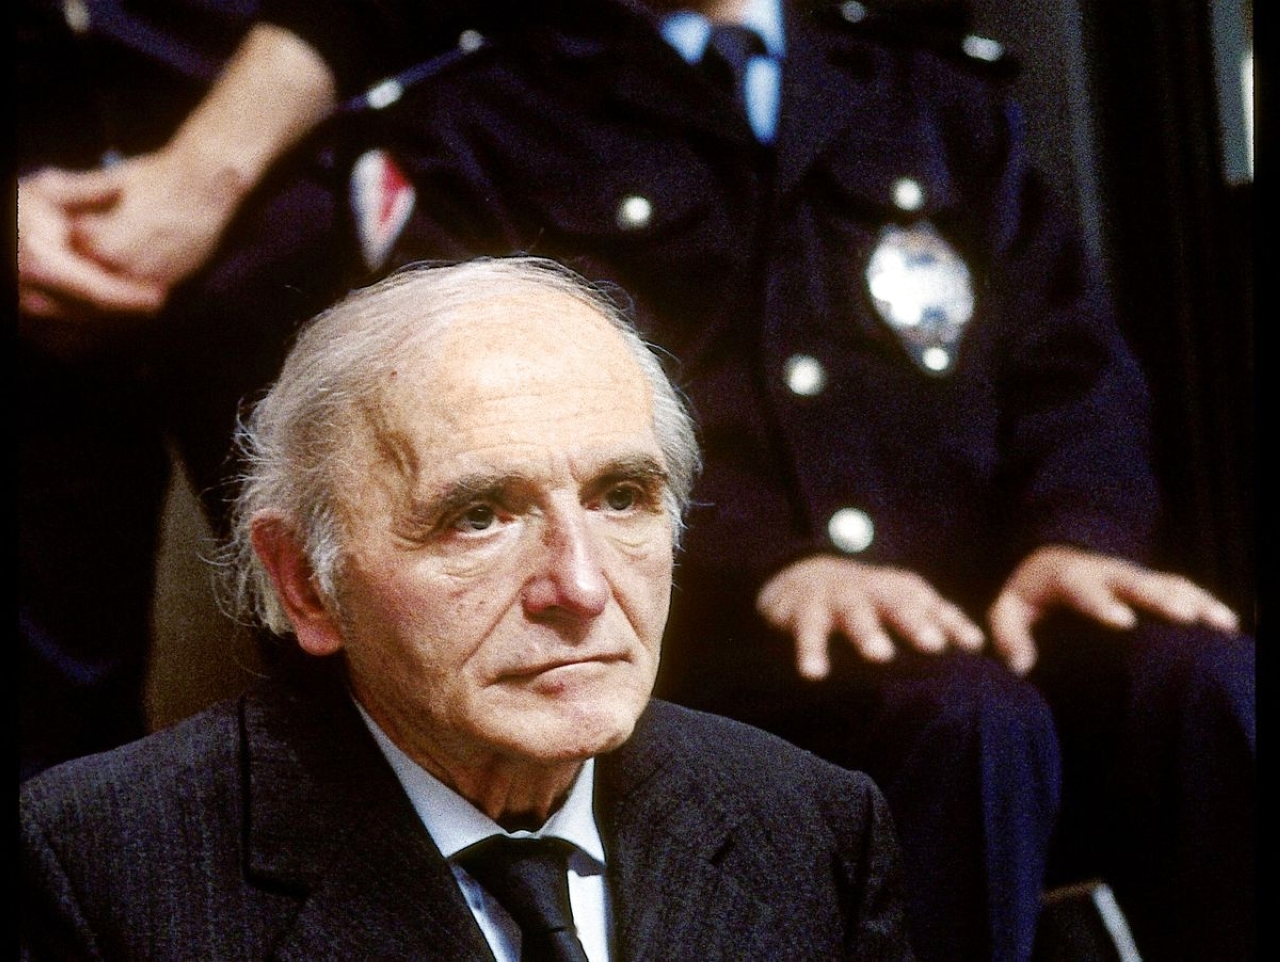 الصورة : 1983 بدء محاكمة كلاوس باربي المسؤول بـ«الغستابو» في ألمانيا النازية خلال الحرب العالمية الثانية.